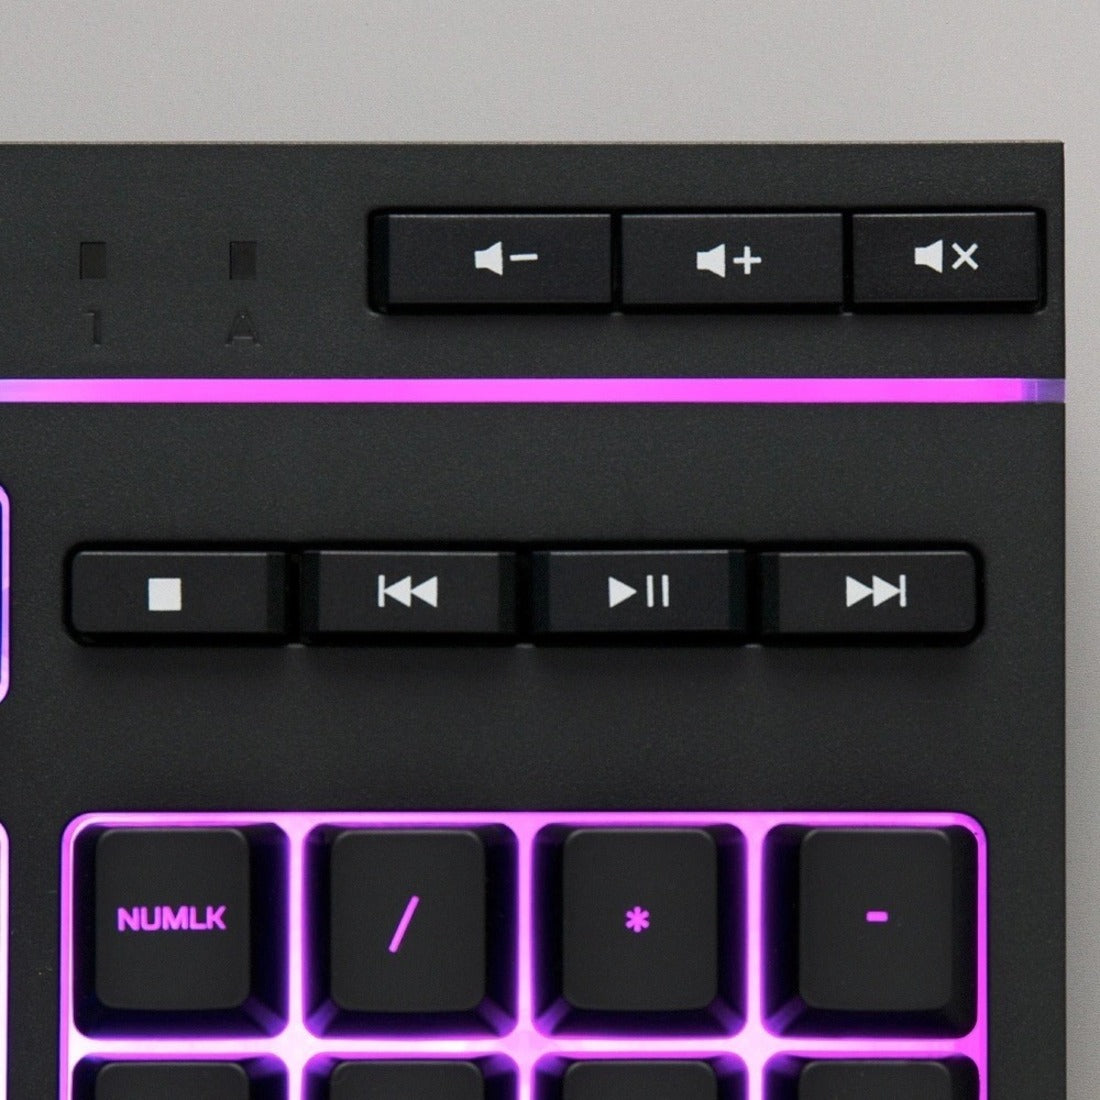 لوحة مفاتيح الألعاب هايبر إكس اكس ار جي بي أم (تصميم الولايات المتحدة)، مضيئة، حجم كامل، مفاتيح هادئة